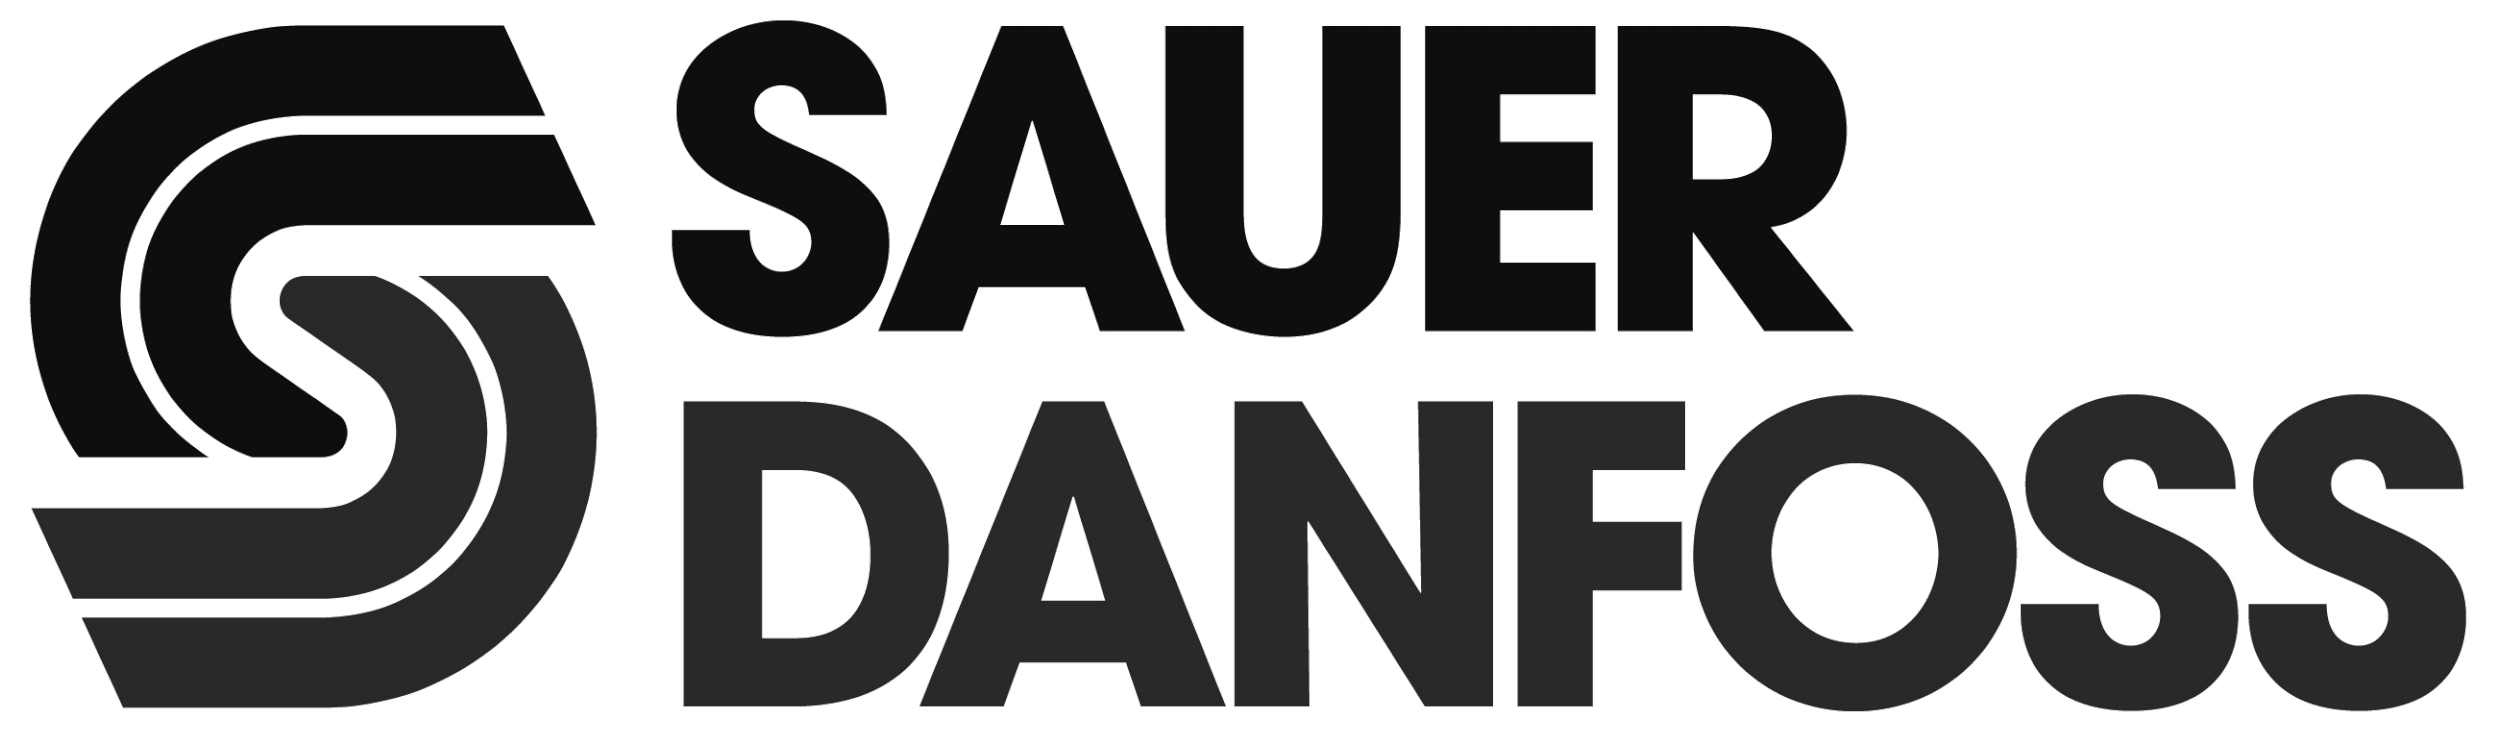 Sauer Danfoss Logo.gif